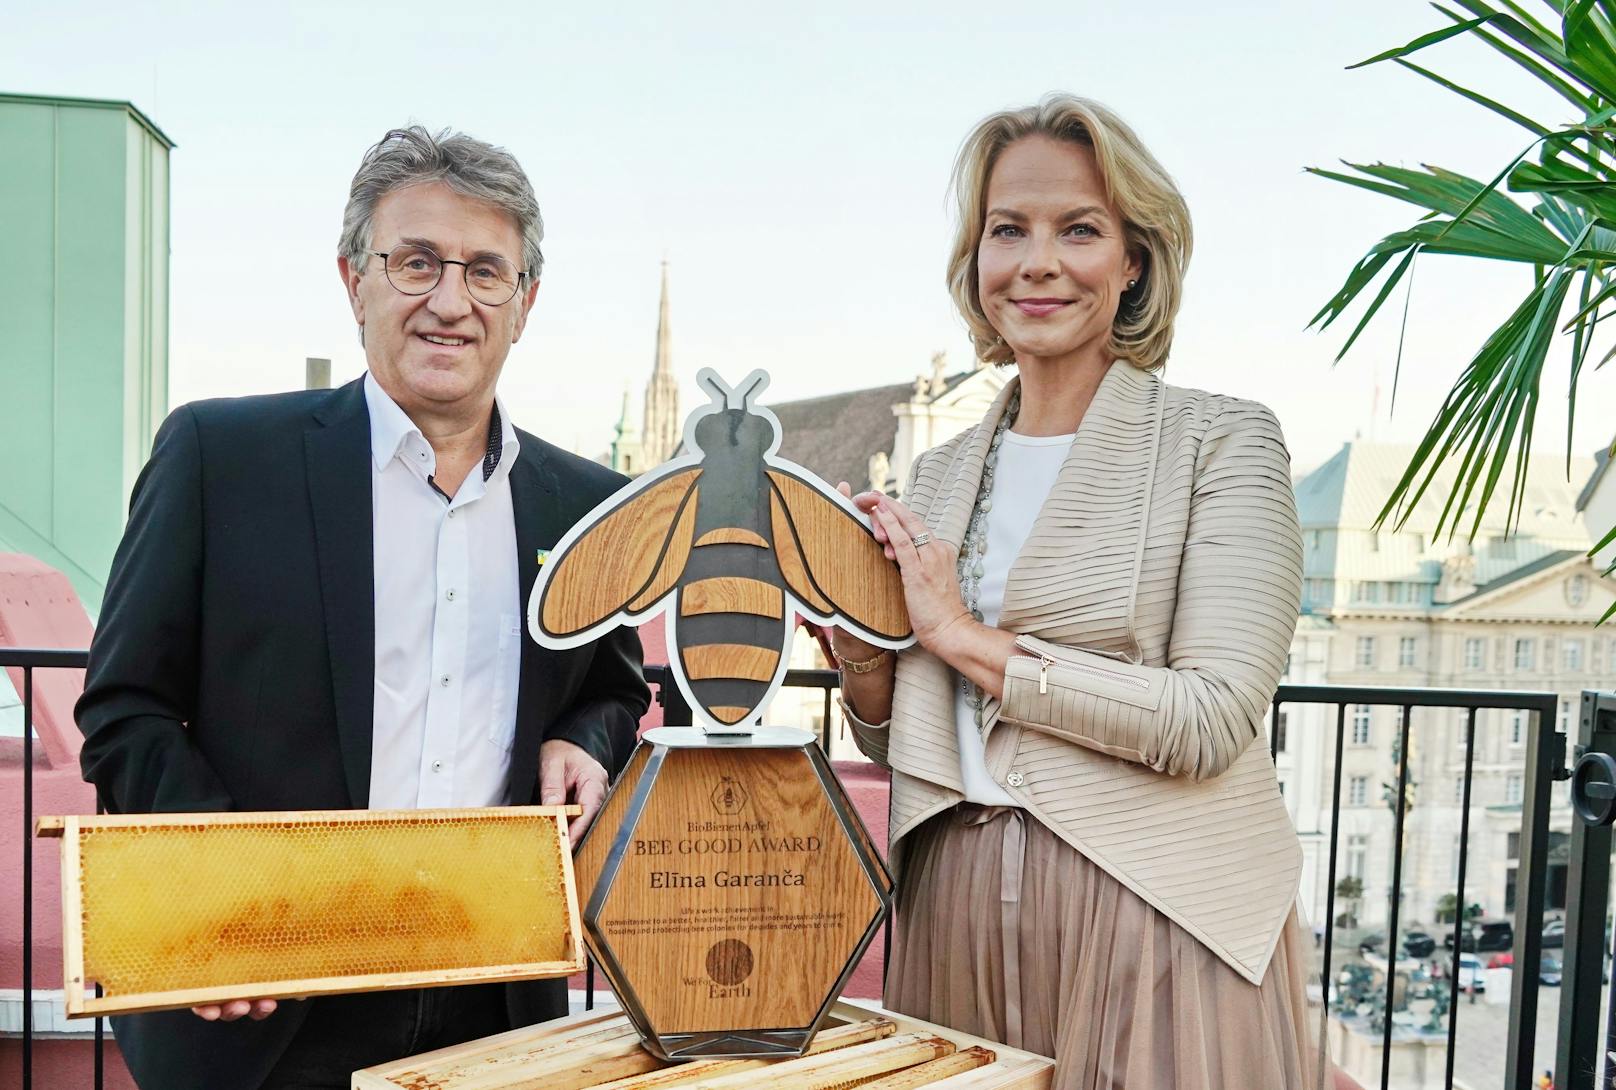 Elīna Garanča erhielt den "BEE GOOD-Award"